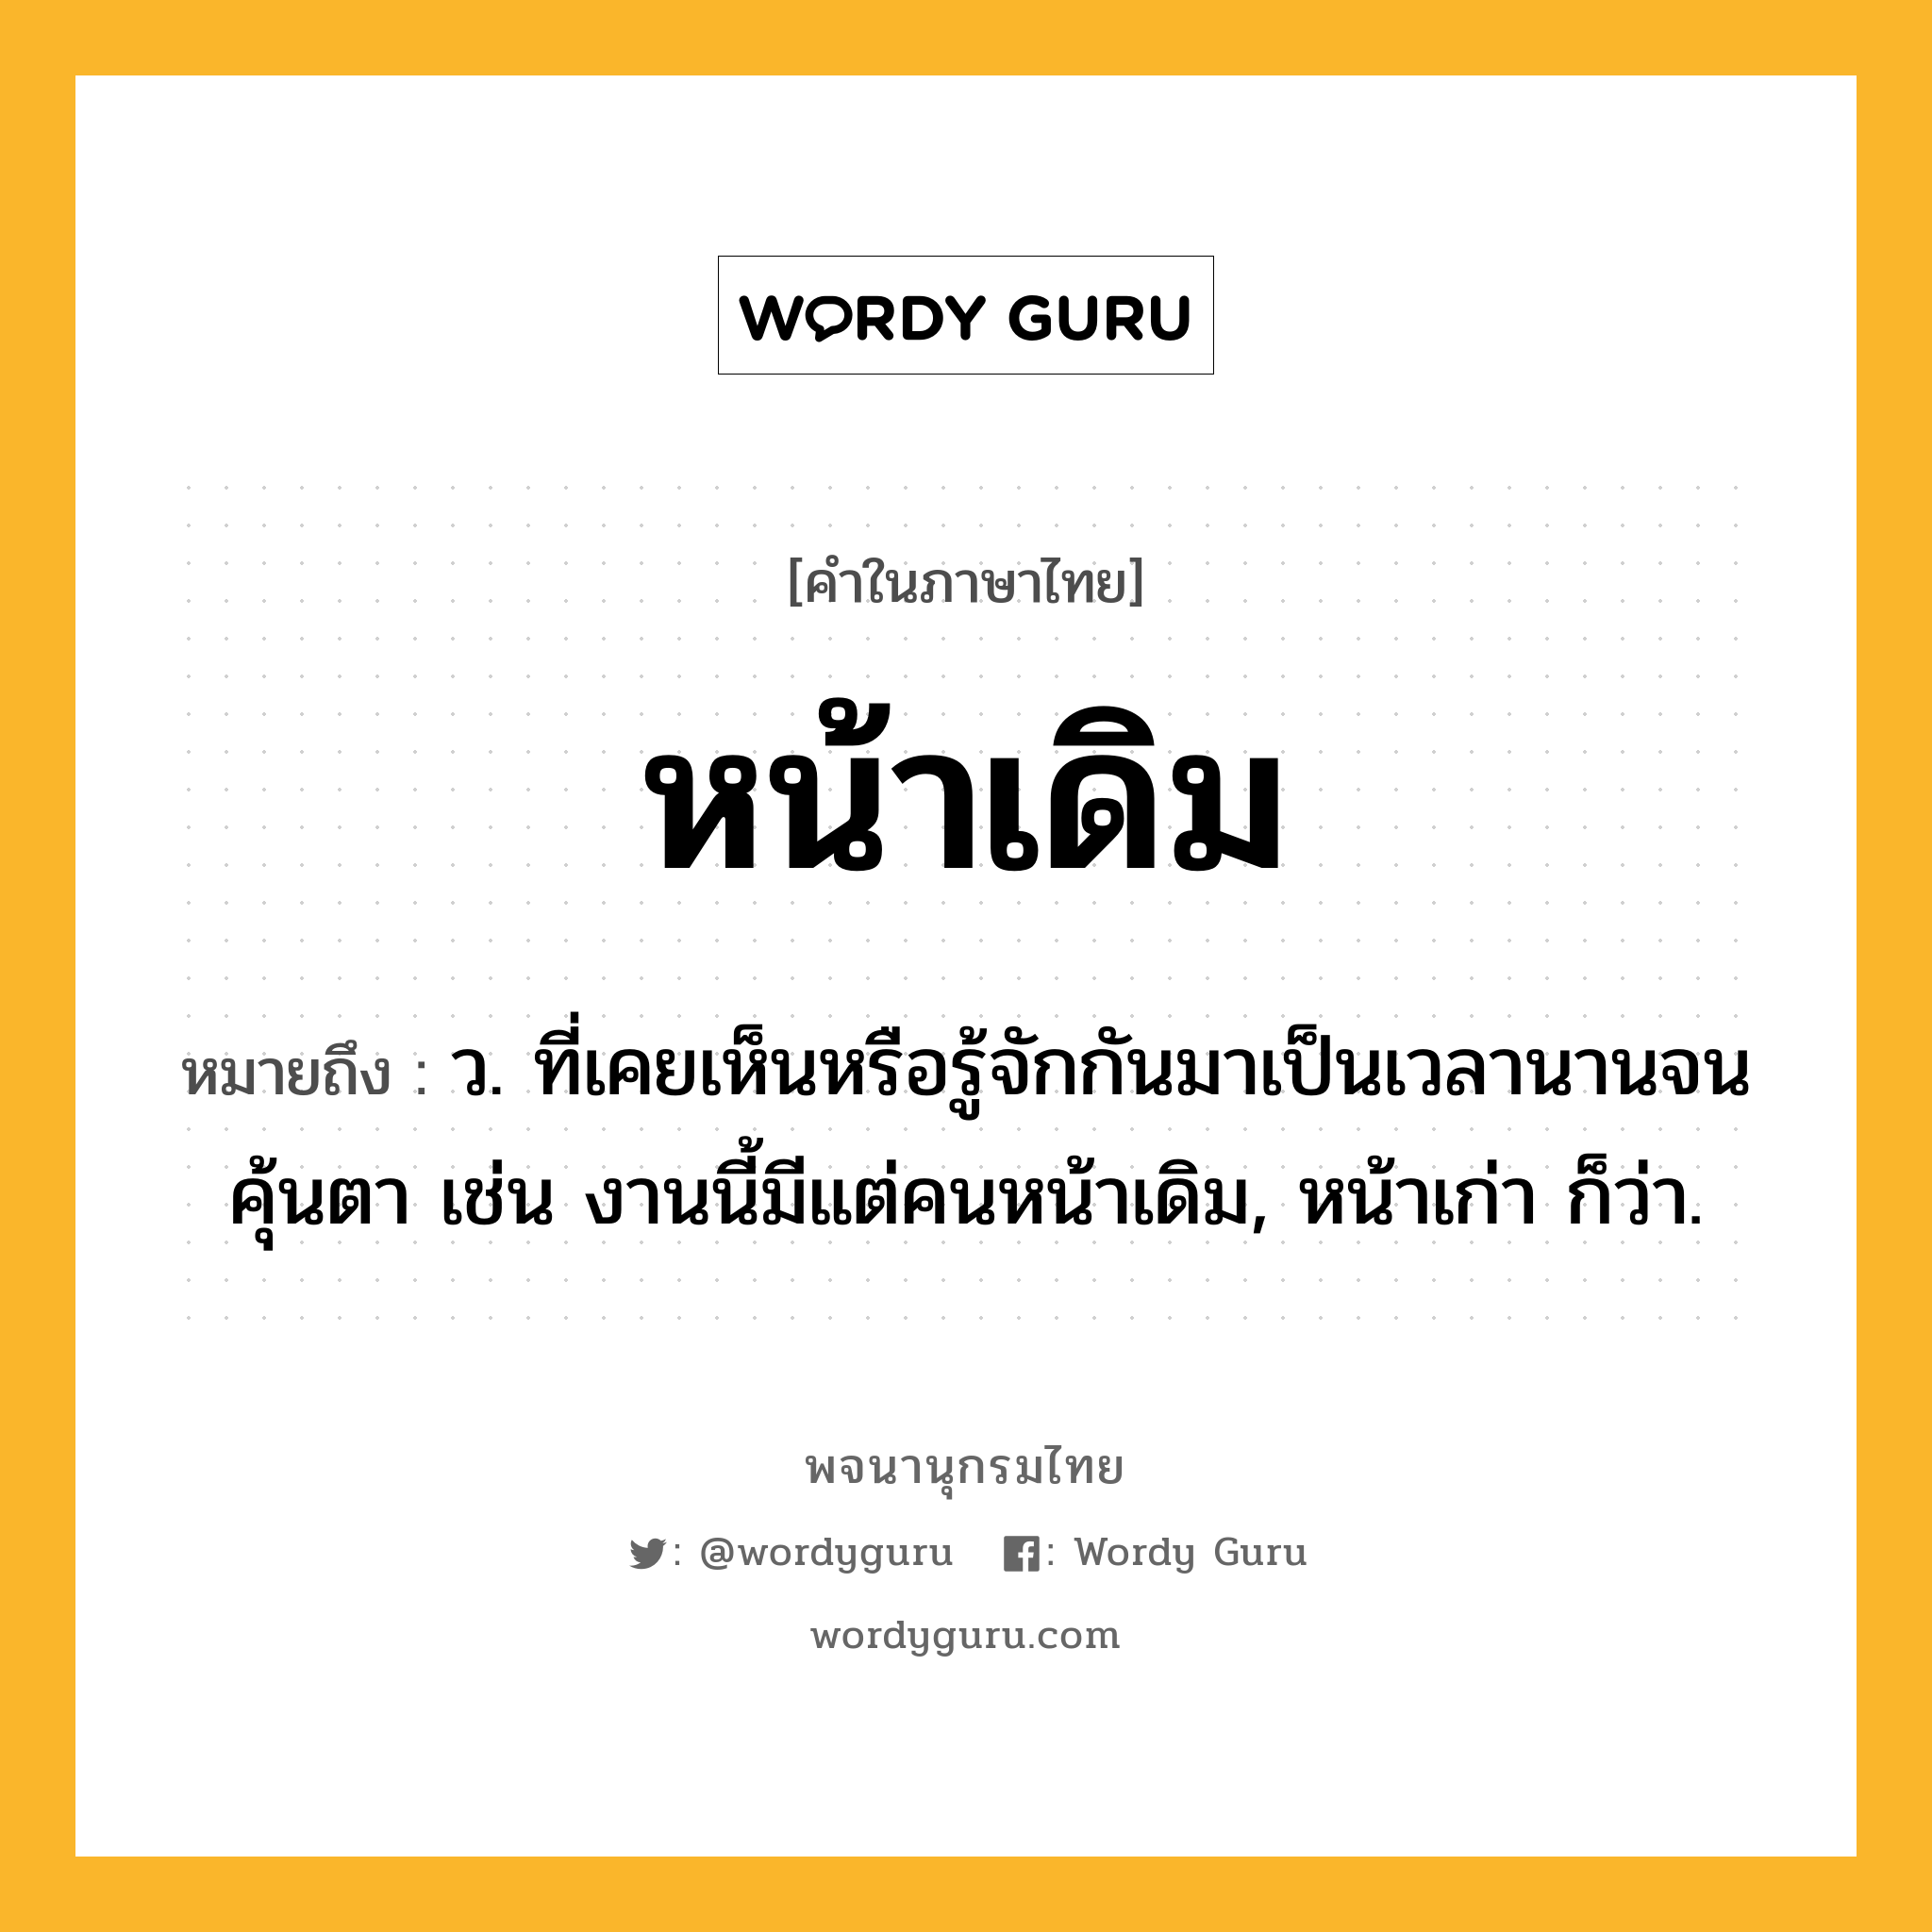 หน้าเดิม ความหมาย หมายถึงอะไร?, คำในภาษาไทย หน้าเดิม หมายถึง ว. ที่เคยเห็นหรือรู้จักกันมาเป็นเวลานานจนคุ้นตา เช่น งานนี้มีแต่คนหน้าเดิม, หน้าเก่า ก็ว่า.